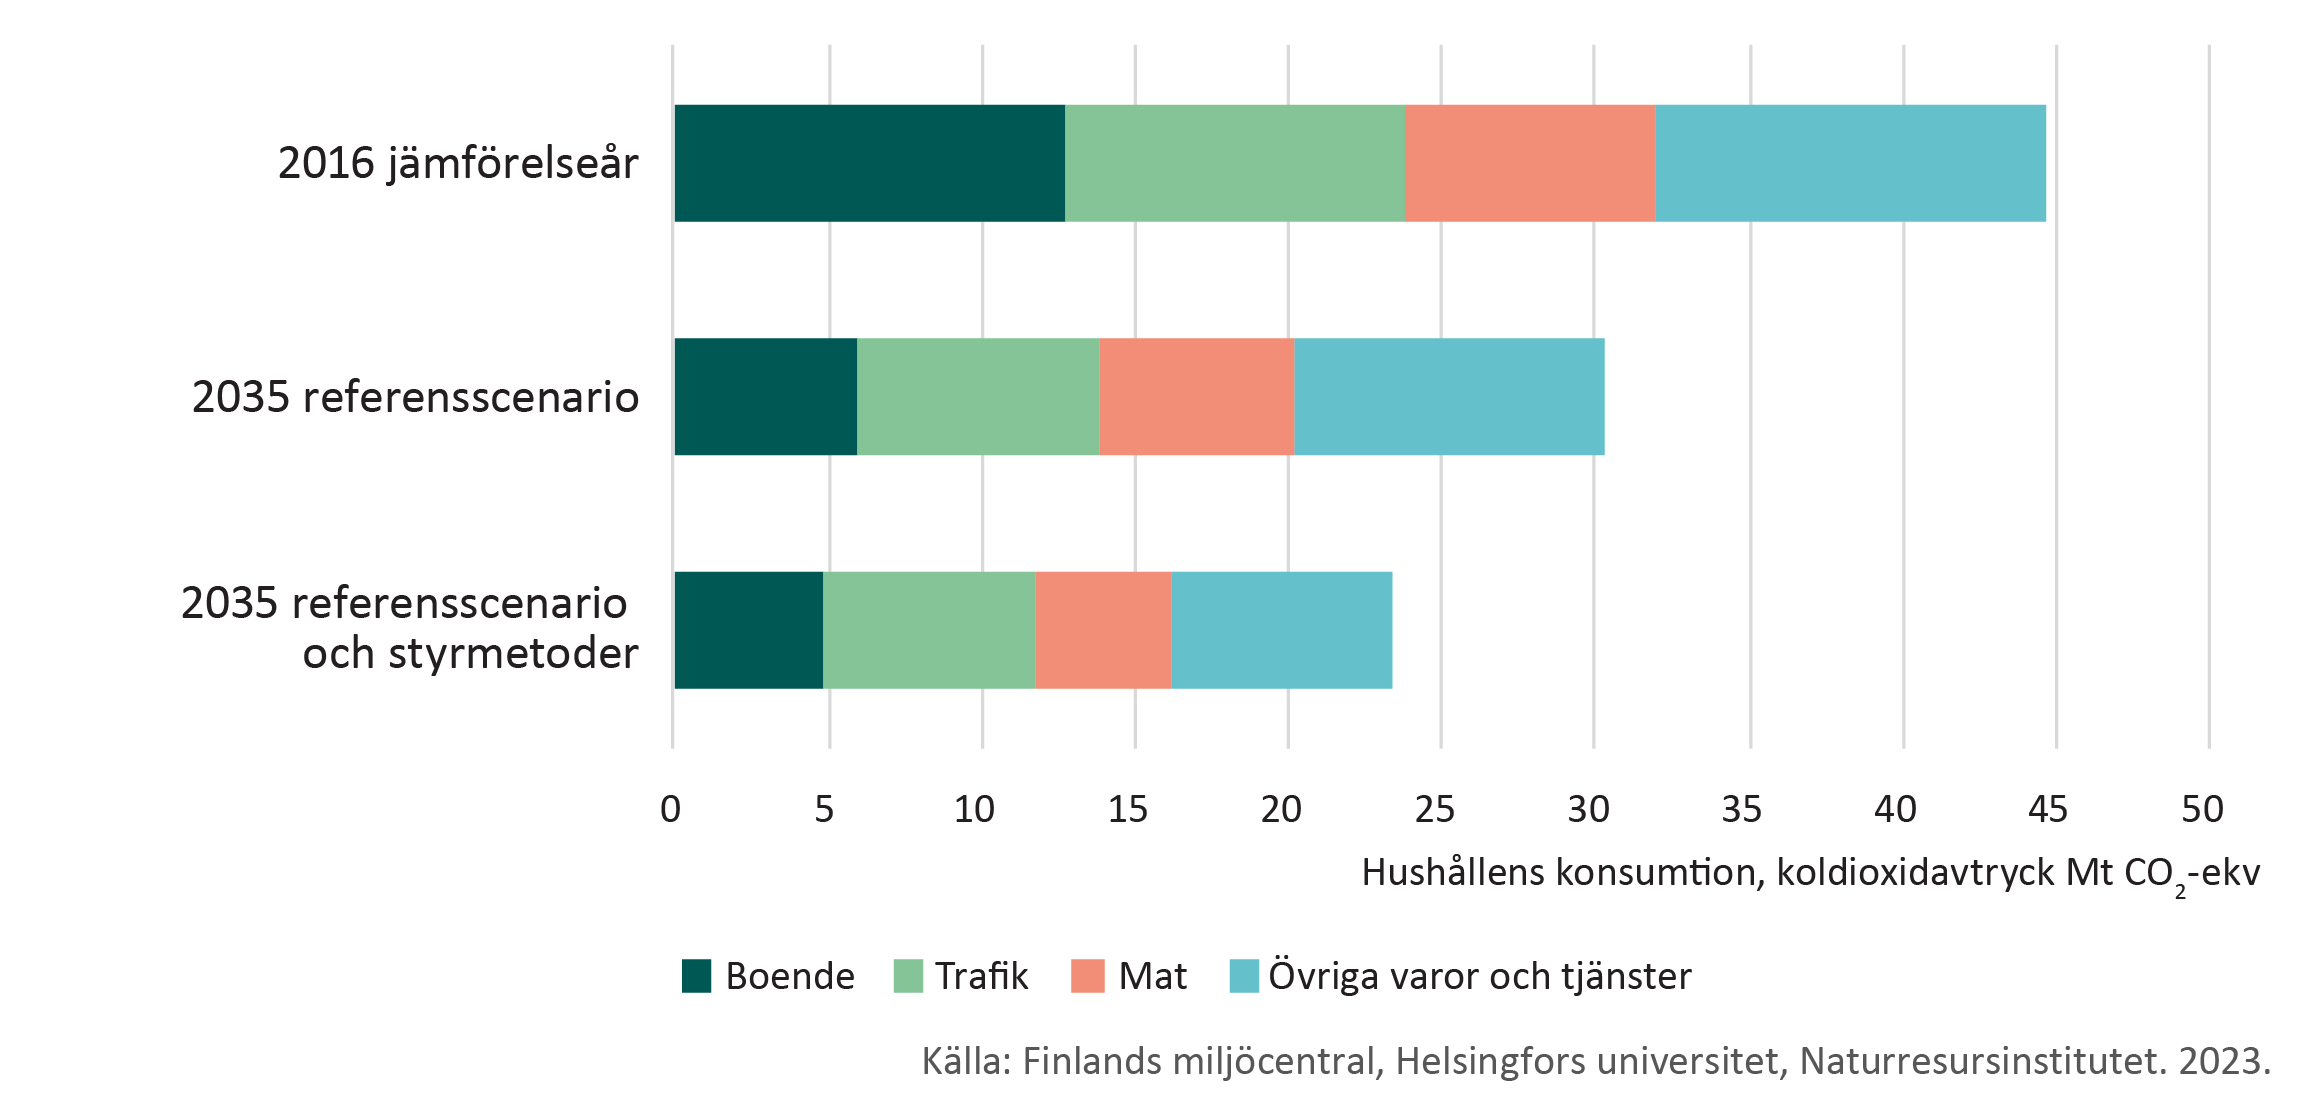 Uppskattning av hur koldioxidavtrycket från konsumtionen i finländska hushåll kommer att förändras till följd av klimatpolitikens grundscenario och nya styrmedel